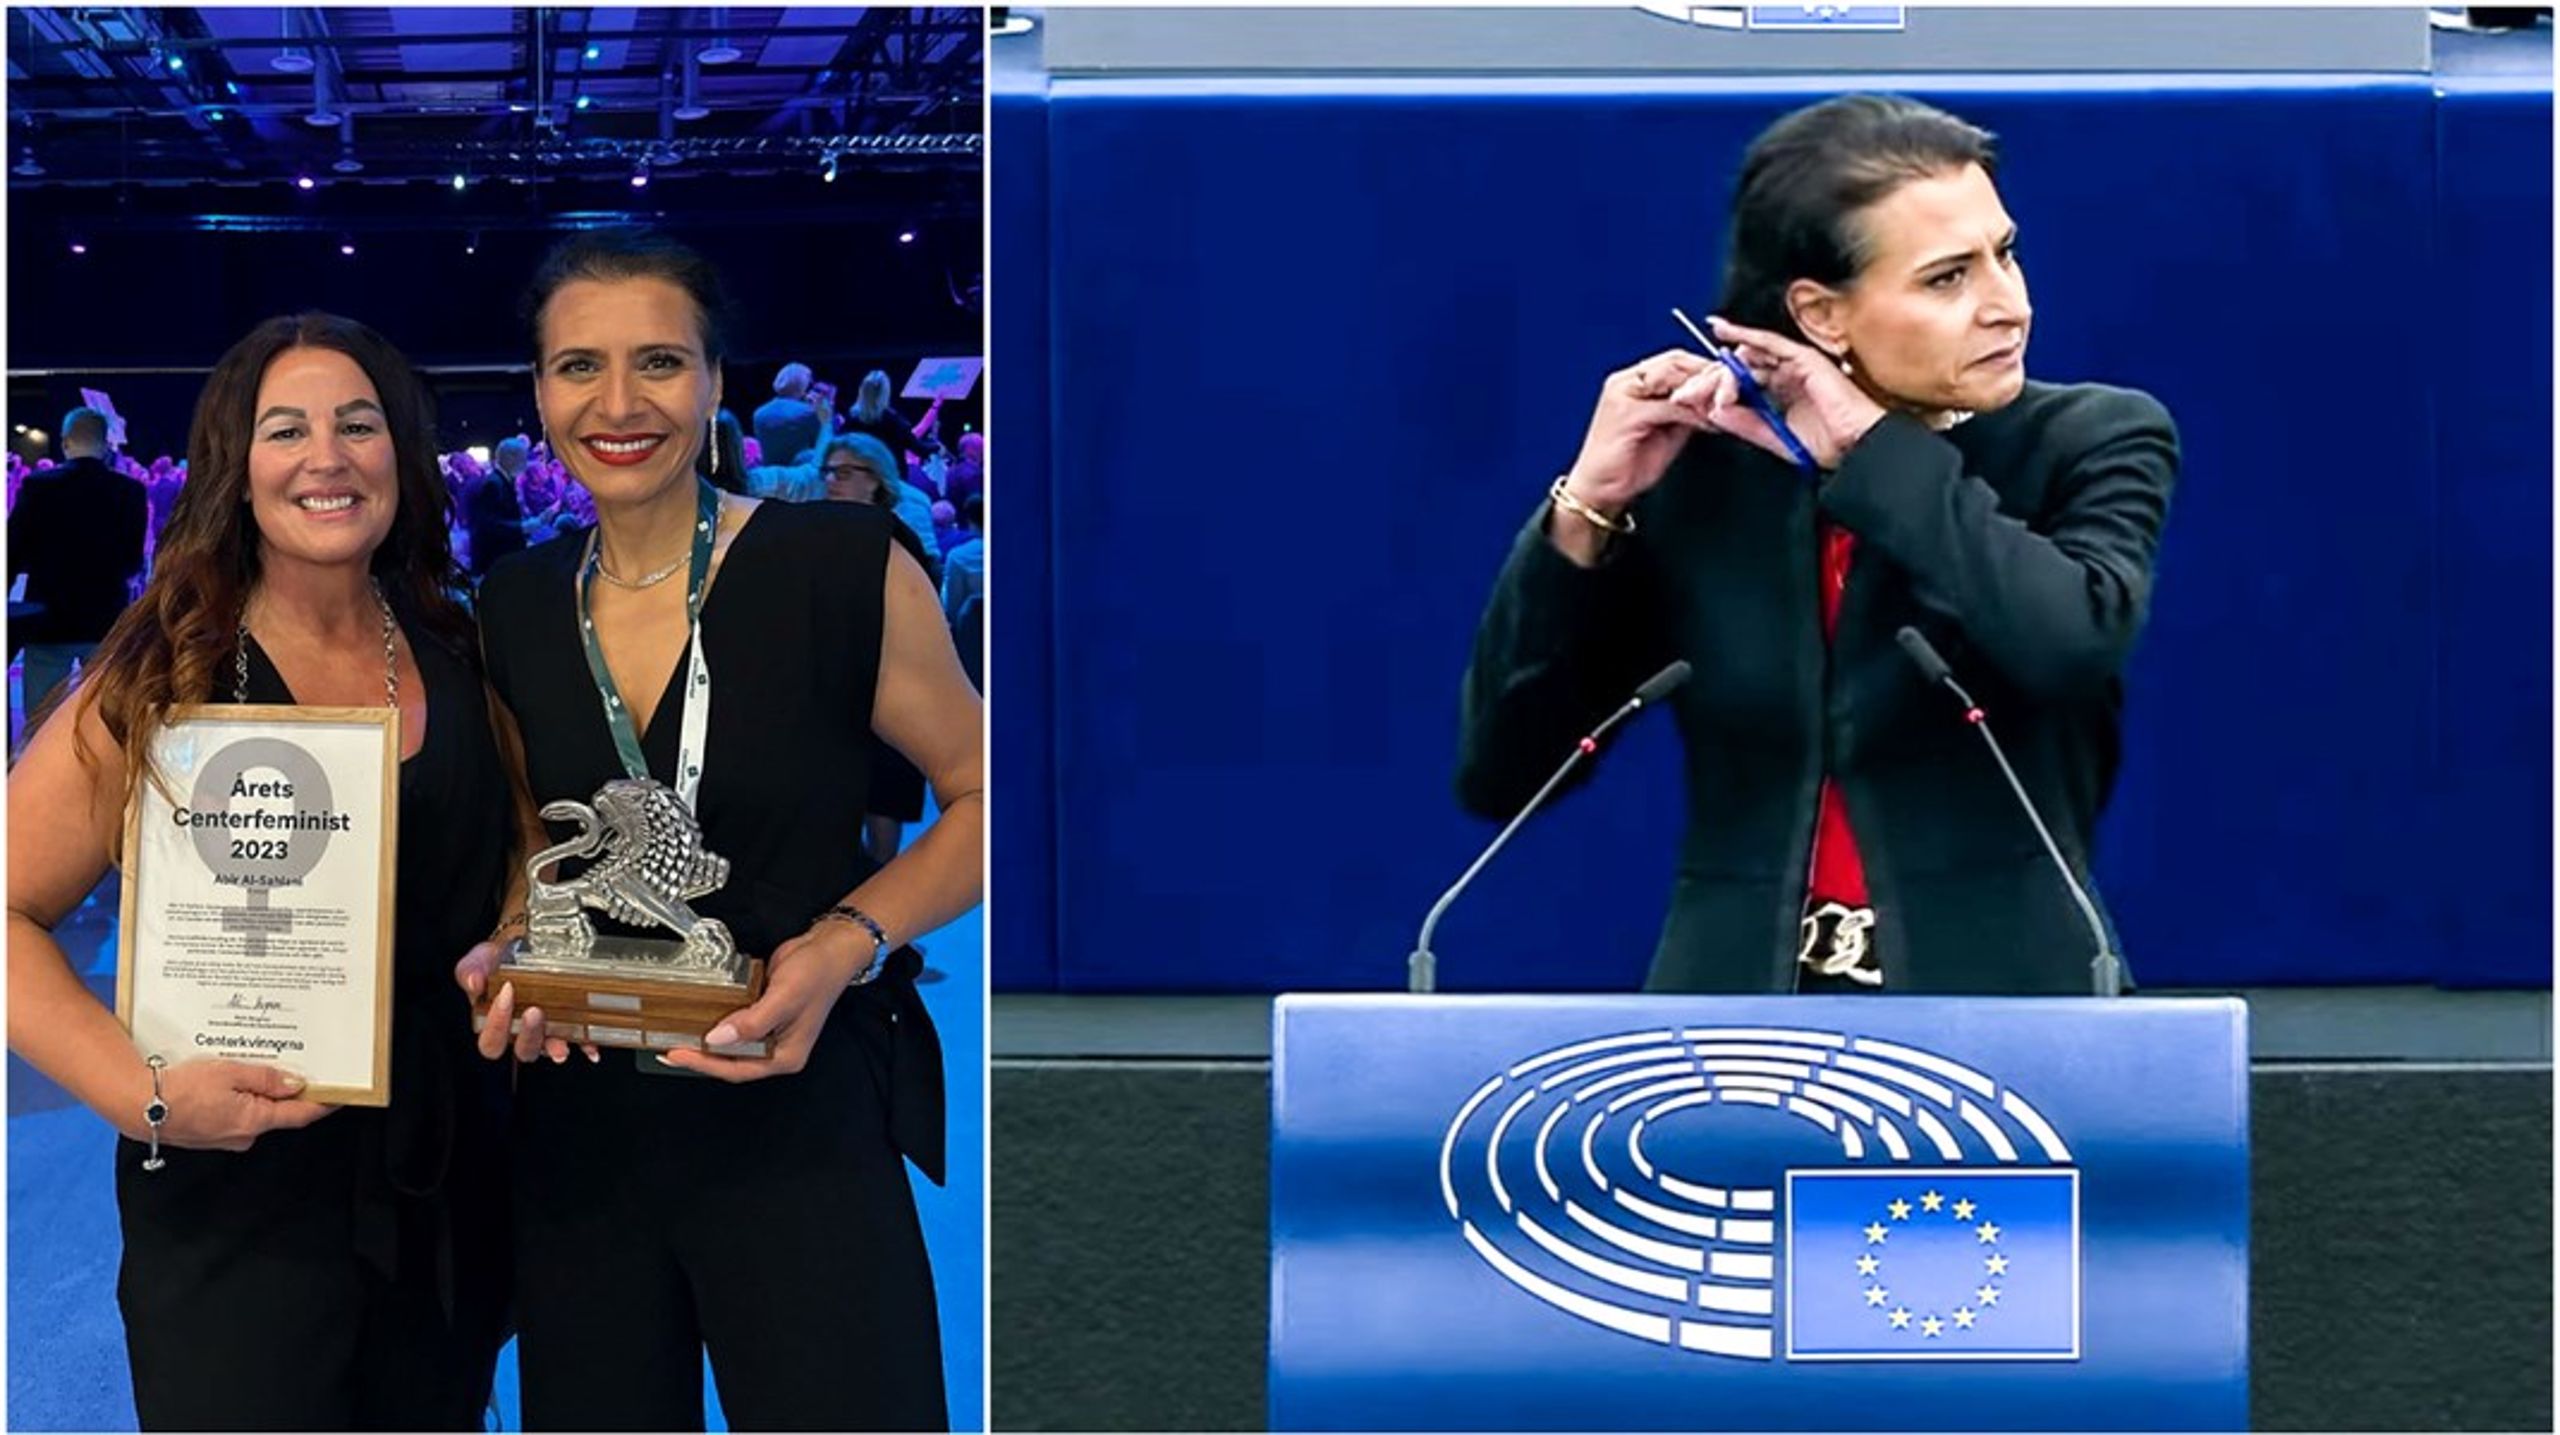 Centerkvinnornas ordförande Malin Bergman delar ut priset Årets Centerfeminist till EU-parlamentarikern Abir Al-Sahlani.